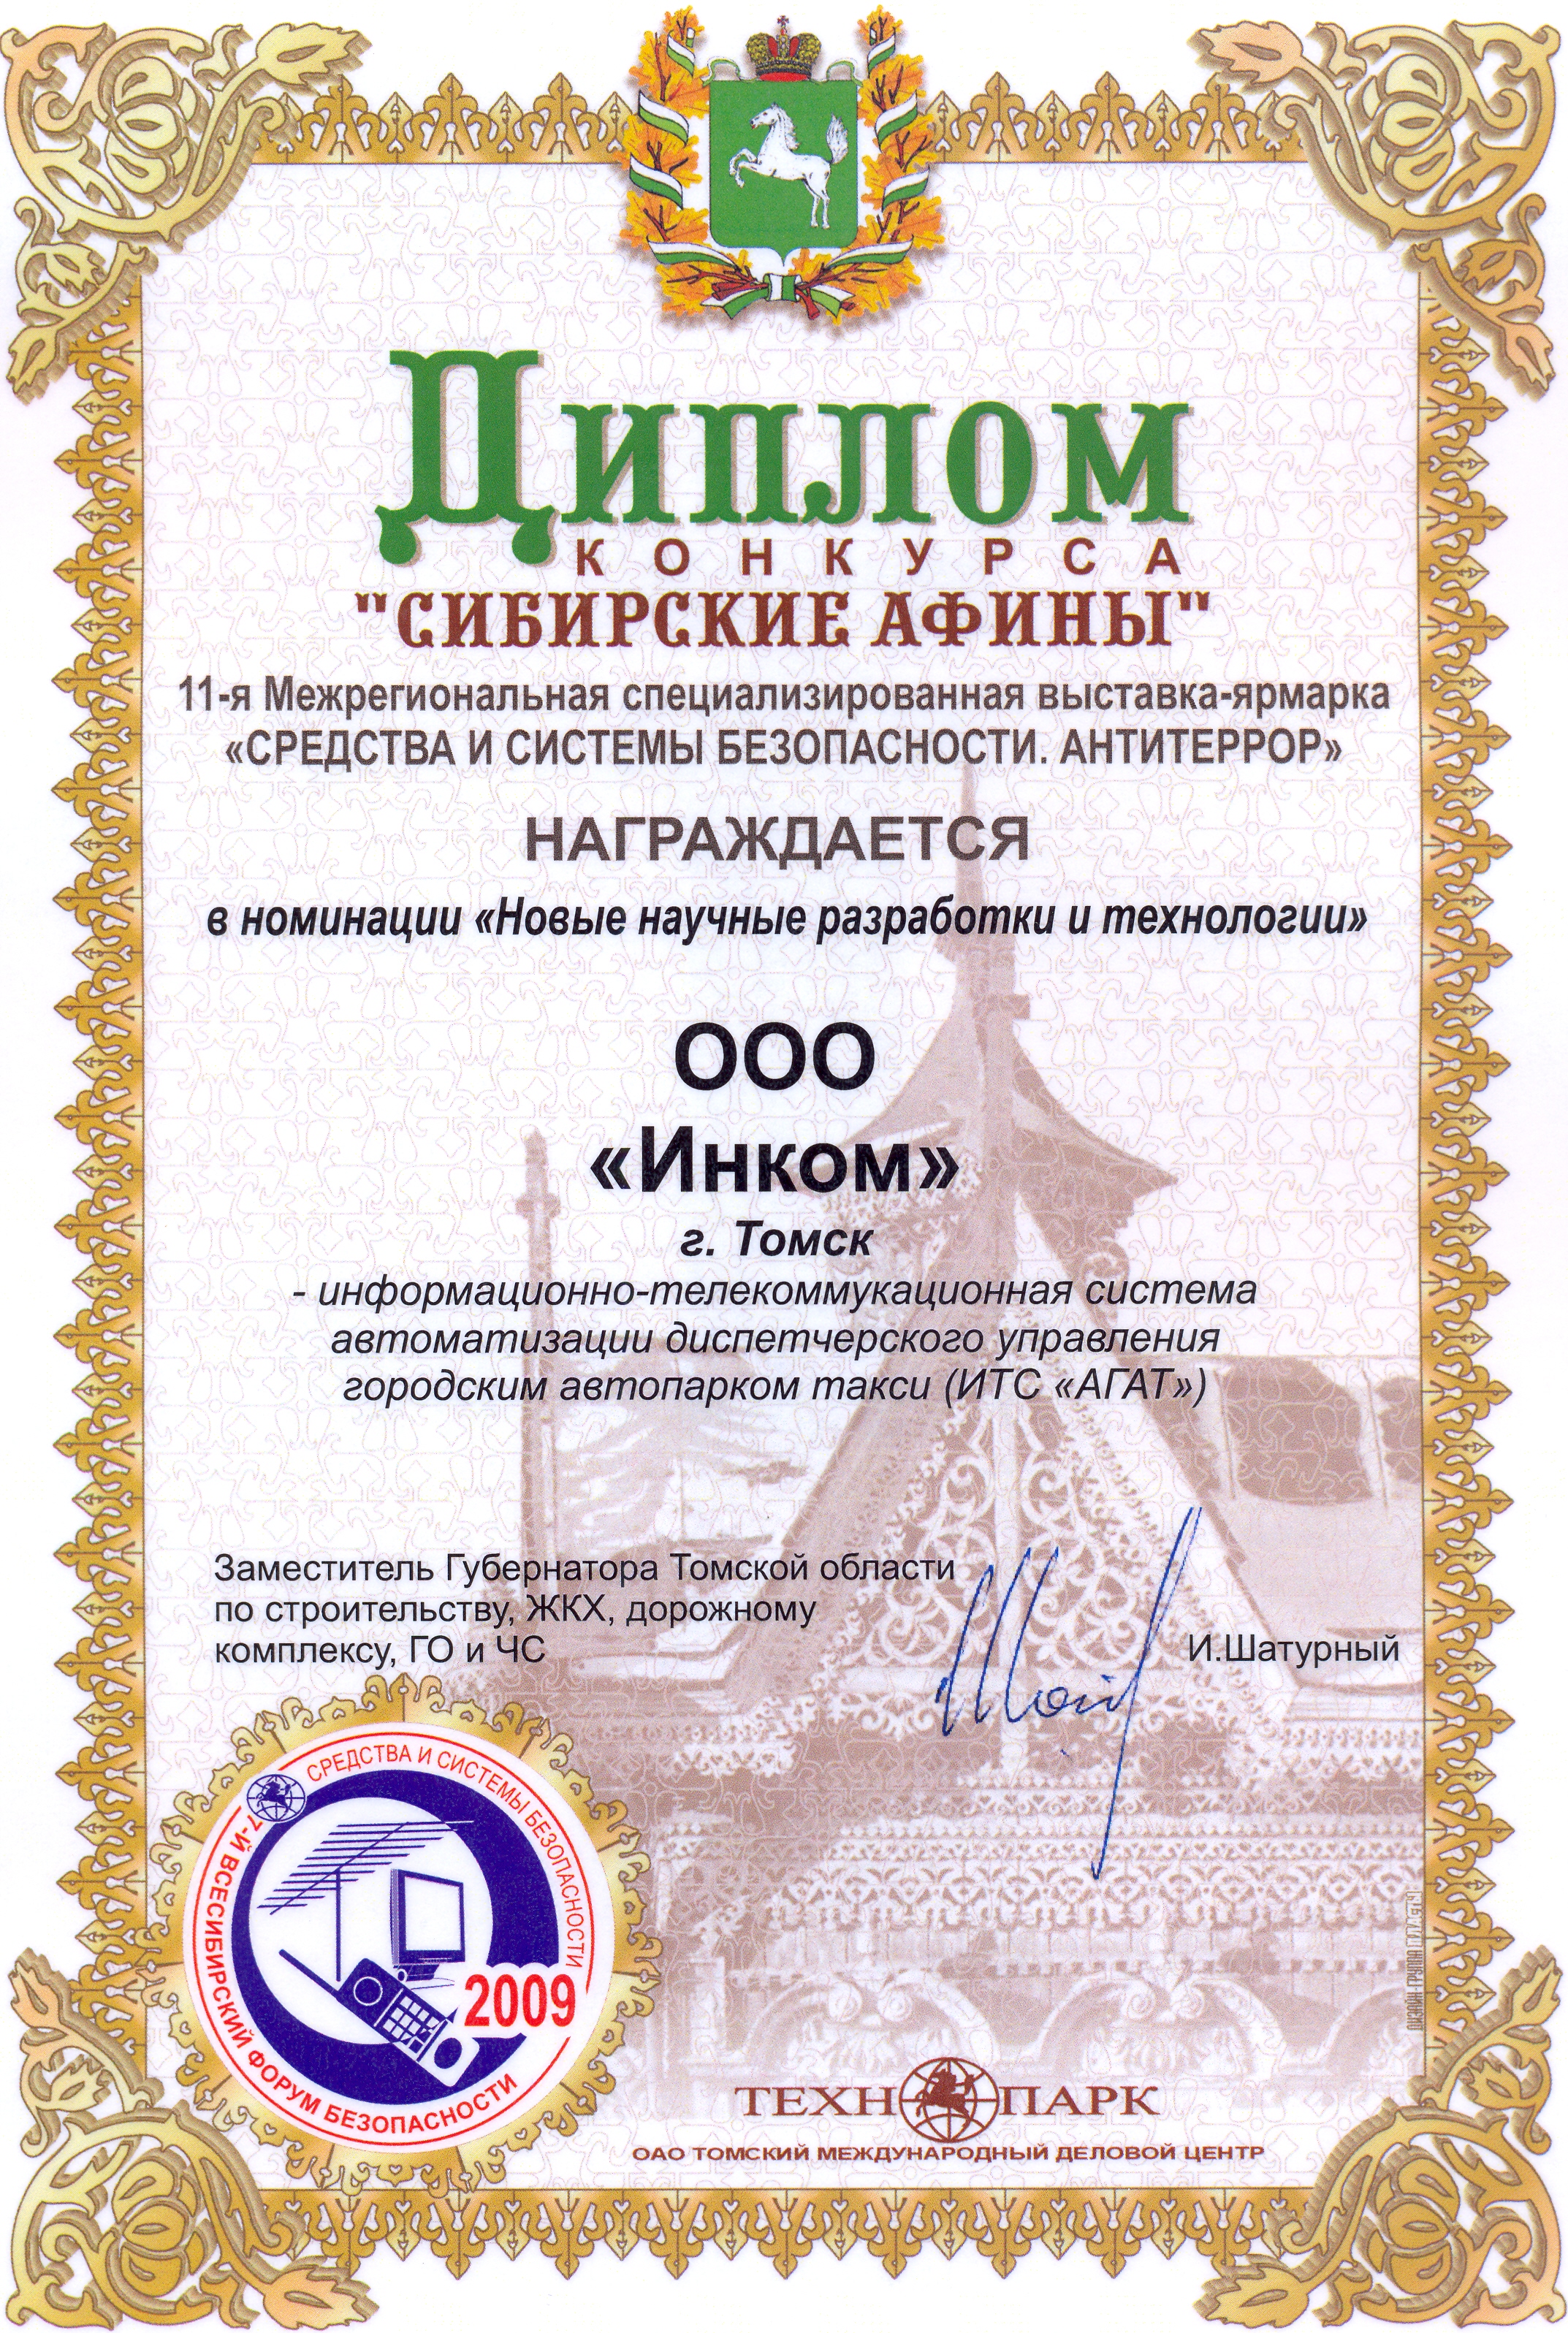 Диплом "Всесибирского форума безопасности" за систему автоматизации такси